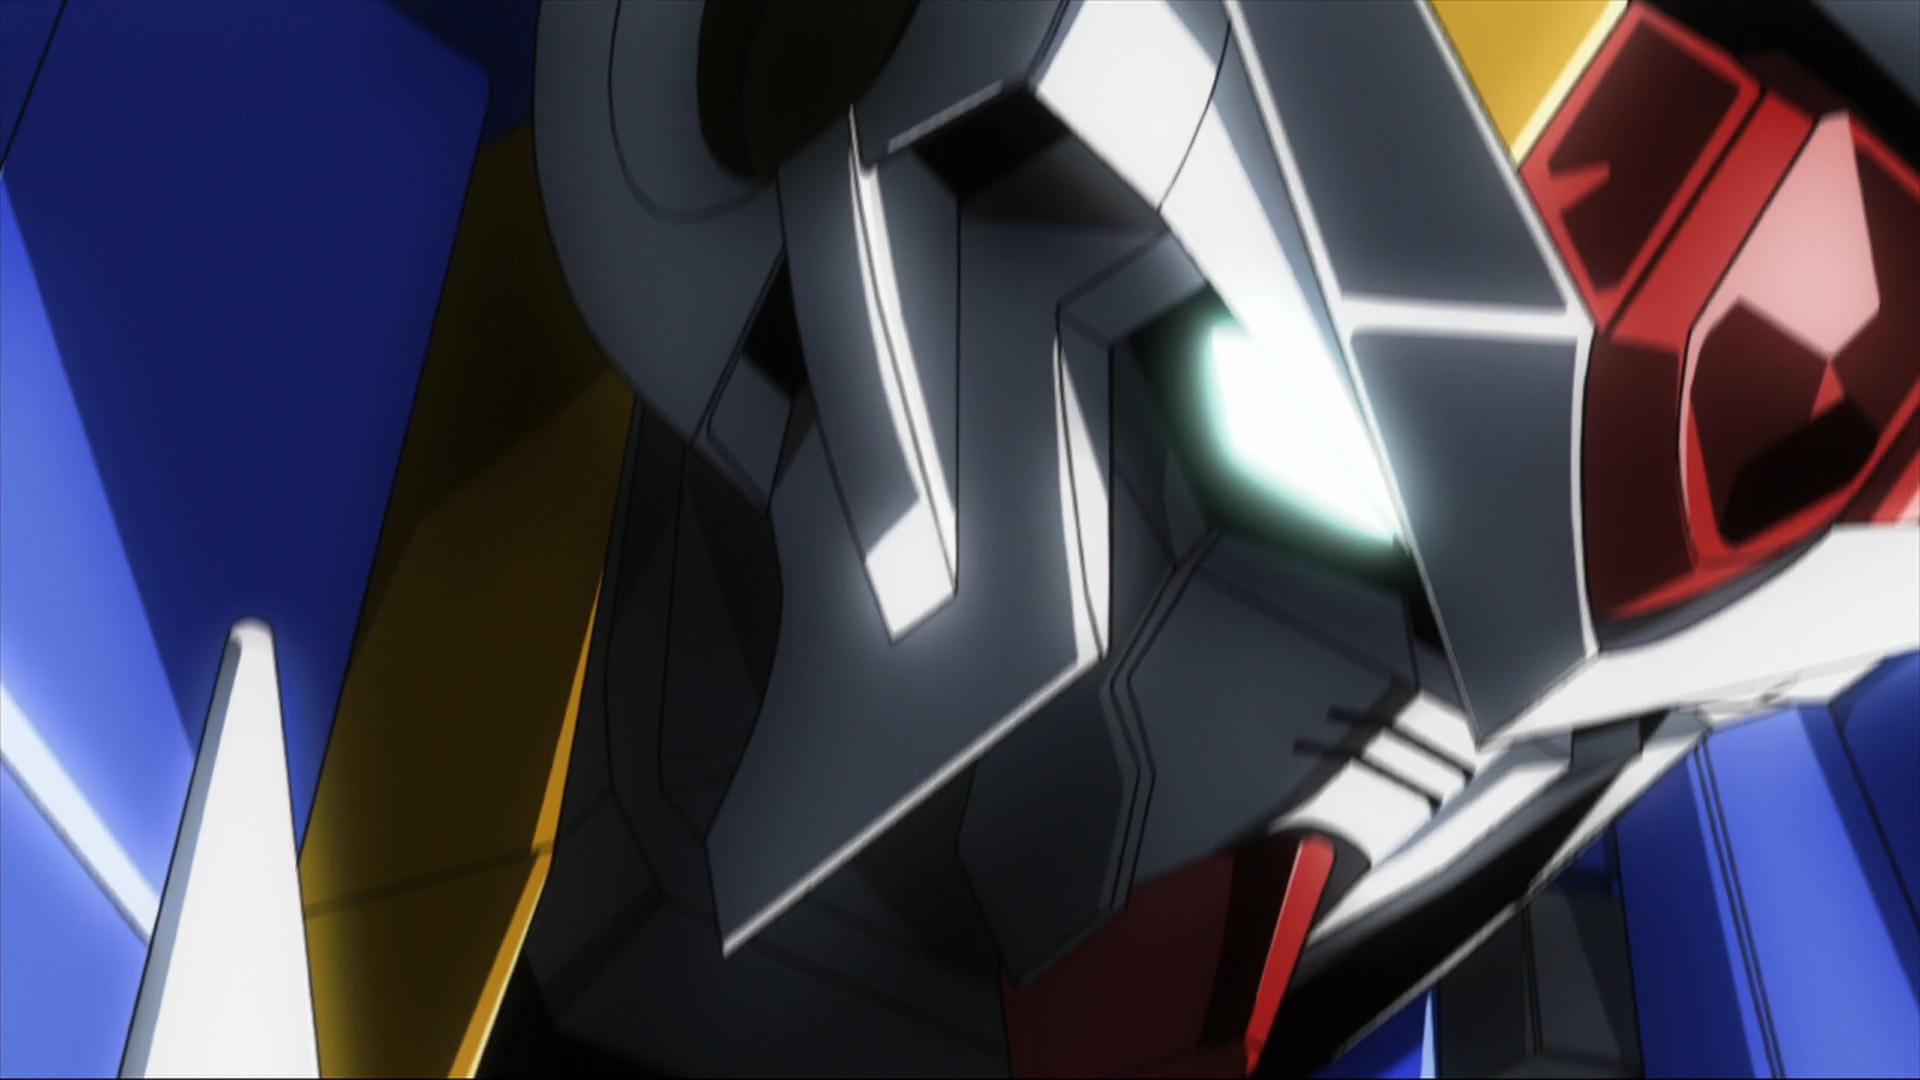 Anime Anime Screenshot Super Robot Taisen Mechs Gundam Mobile Suit Gundam 00 00 Raiser Artwork Digit 1920x1080